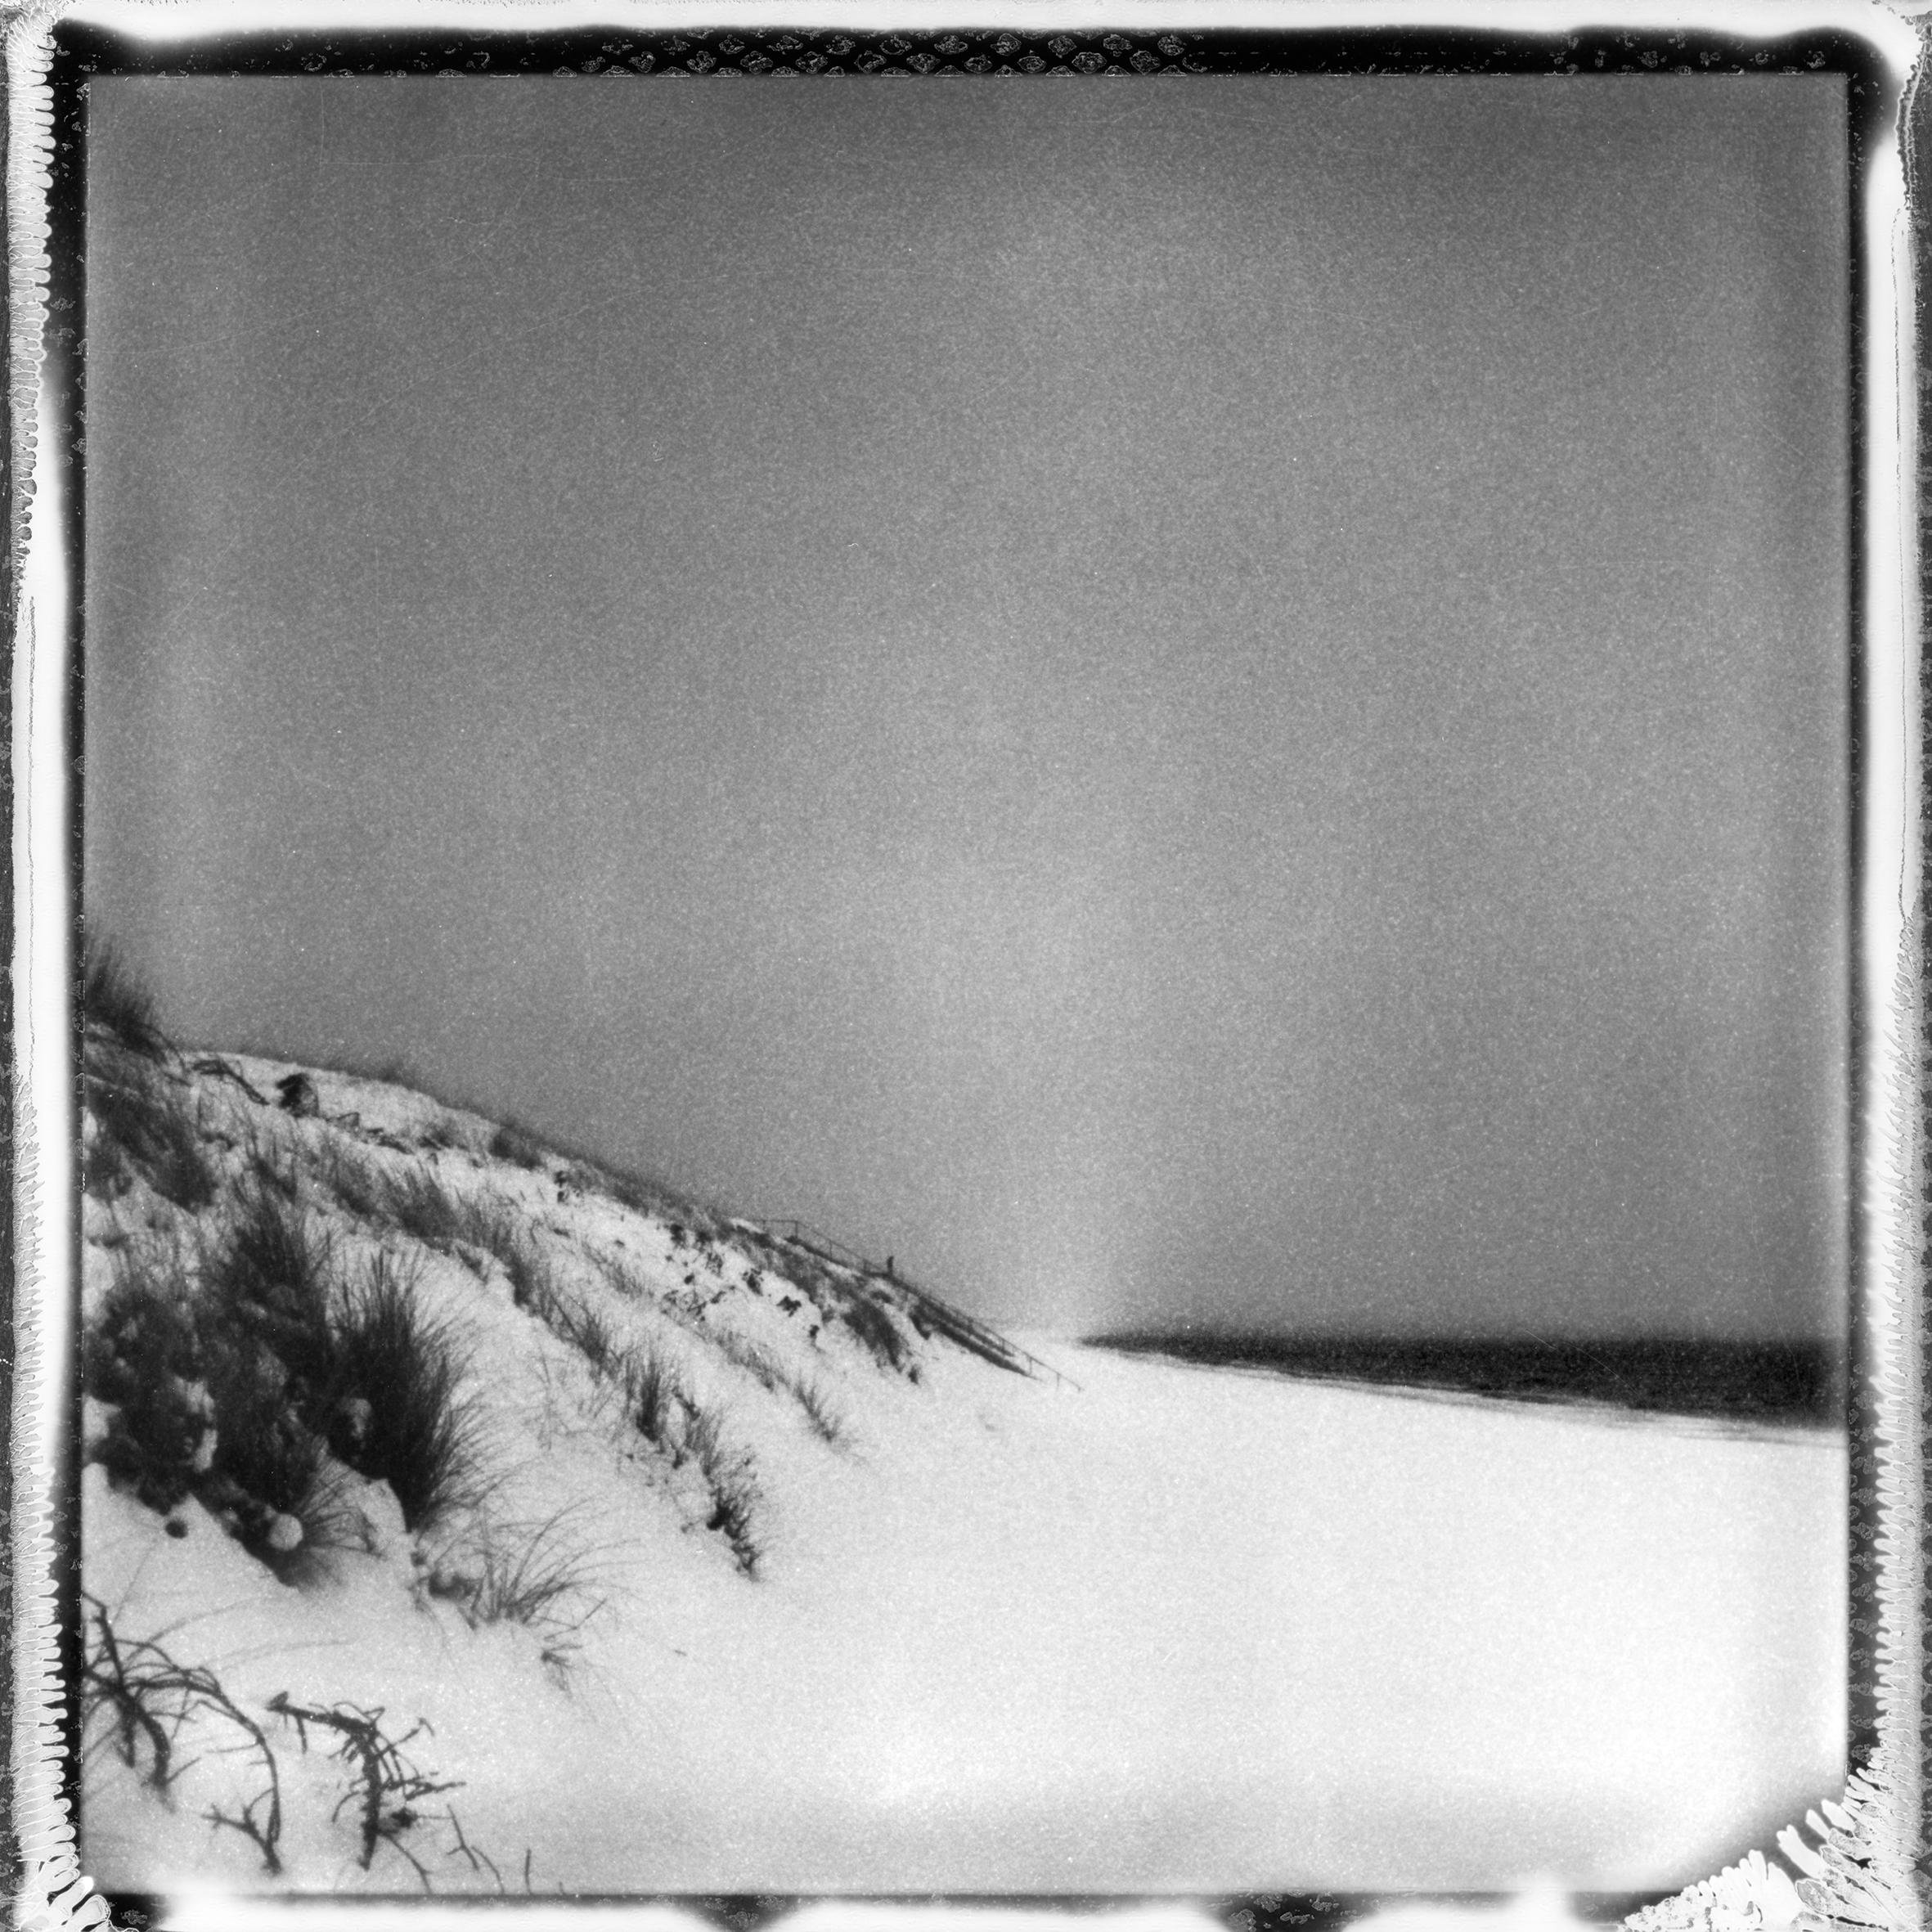 „Frozen beach #2“ – Schwarz-Weiß- analoge Landschaftsfotografie in Schwarz-Weiß